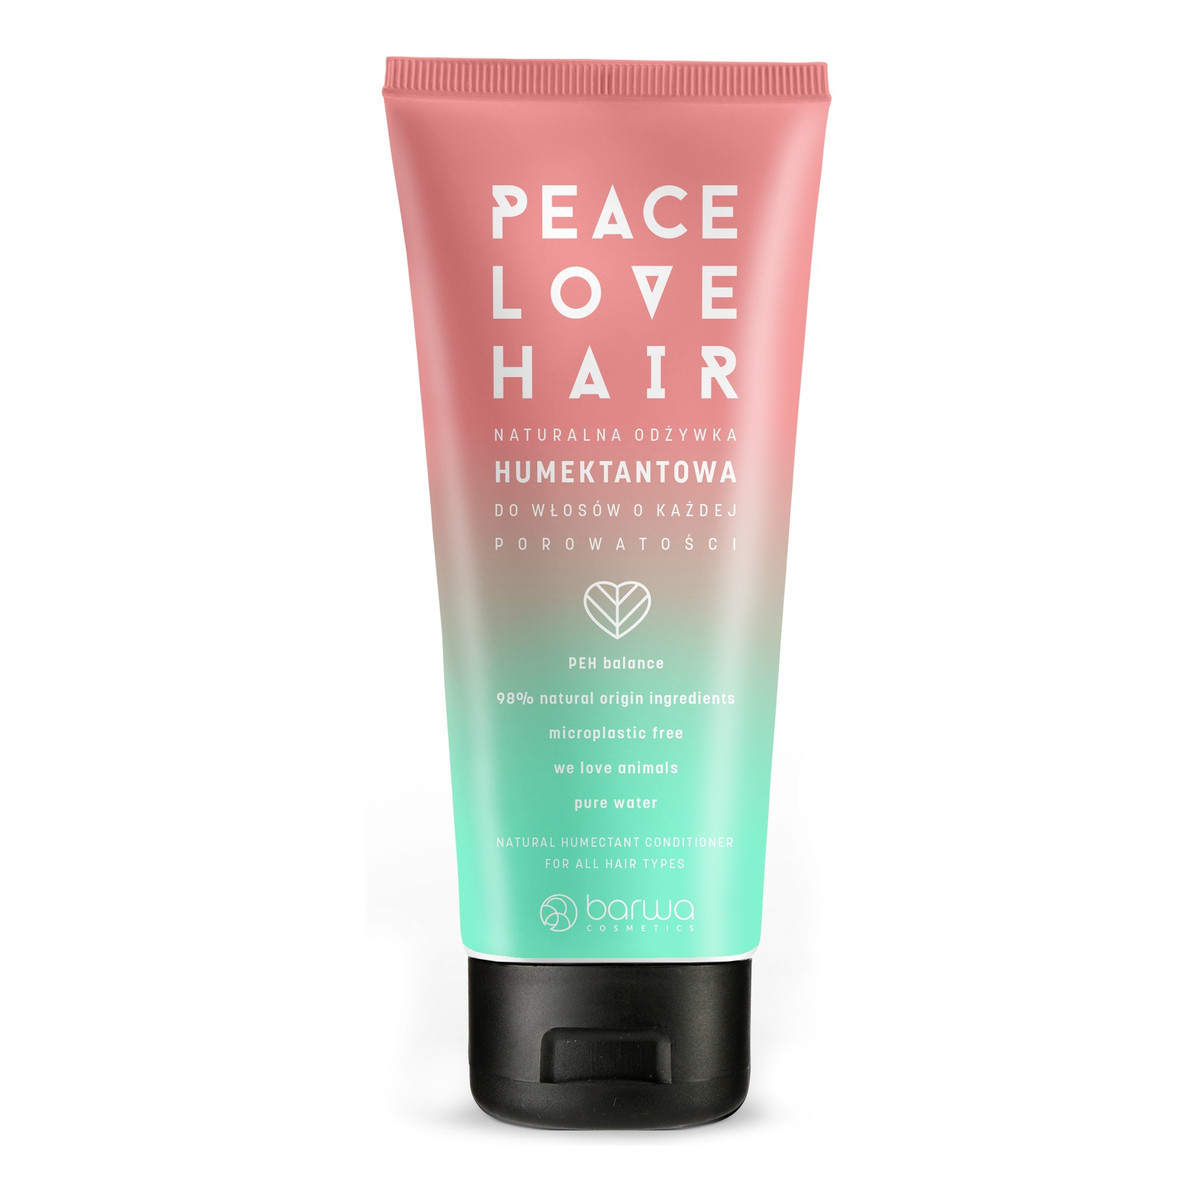 Barwa Peace Love Hair Naturalna Odżywka humektantowa do włosów o każdej porowatośc 180ml